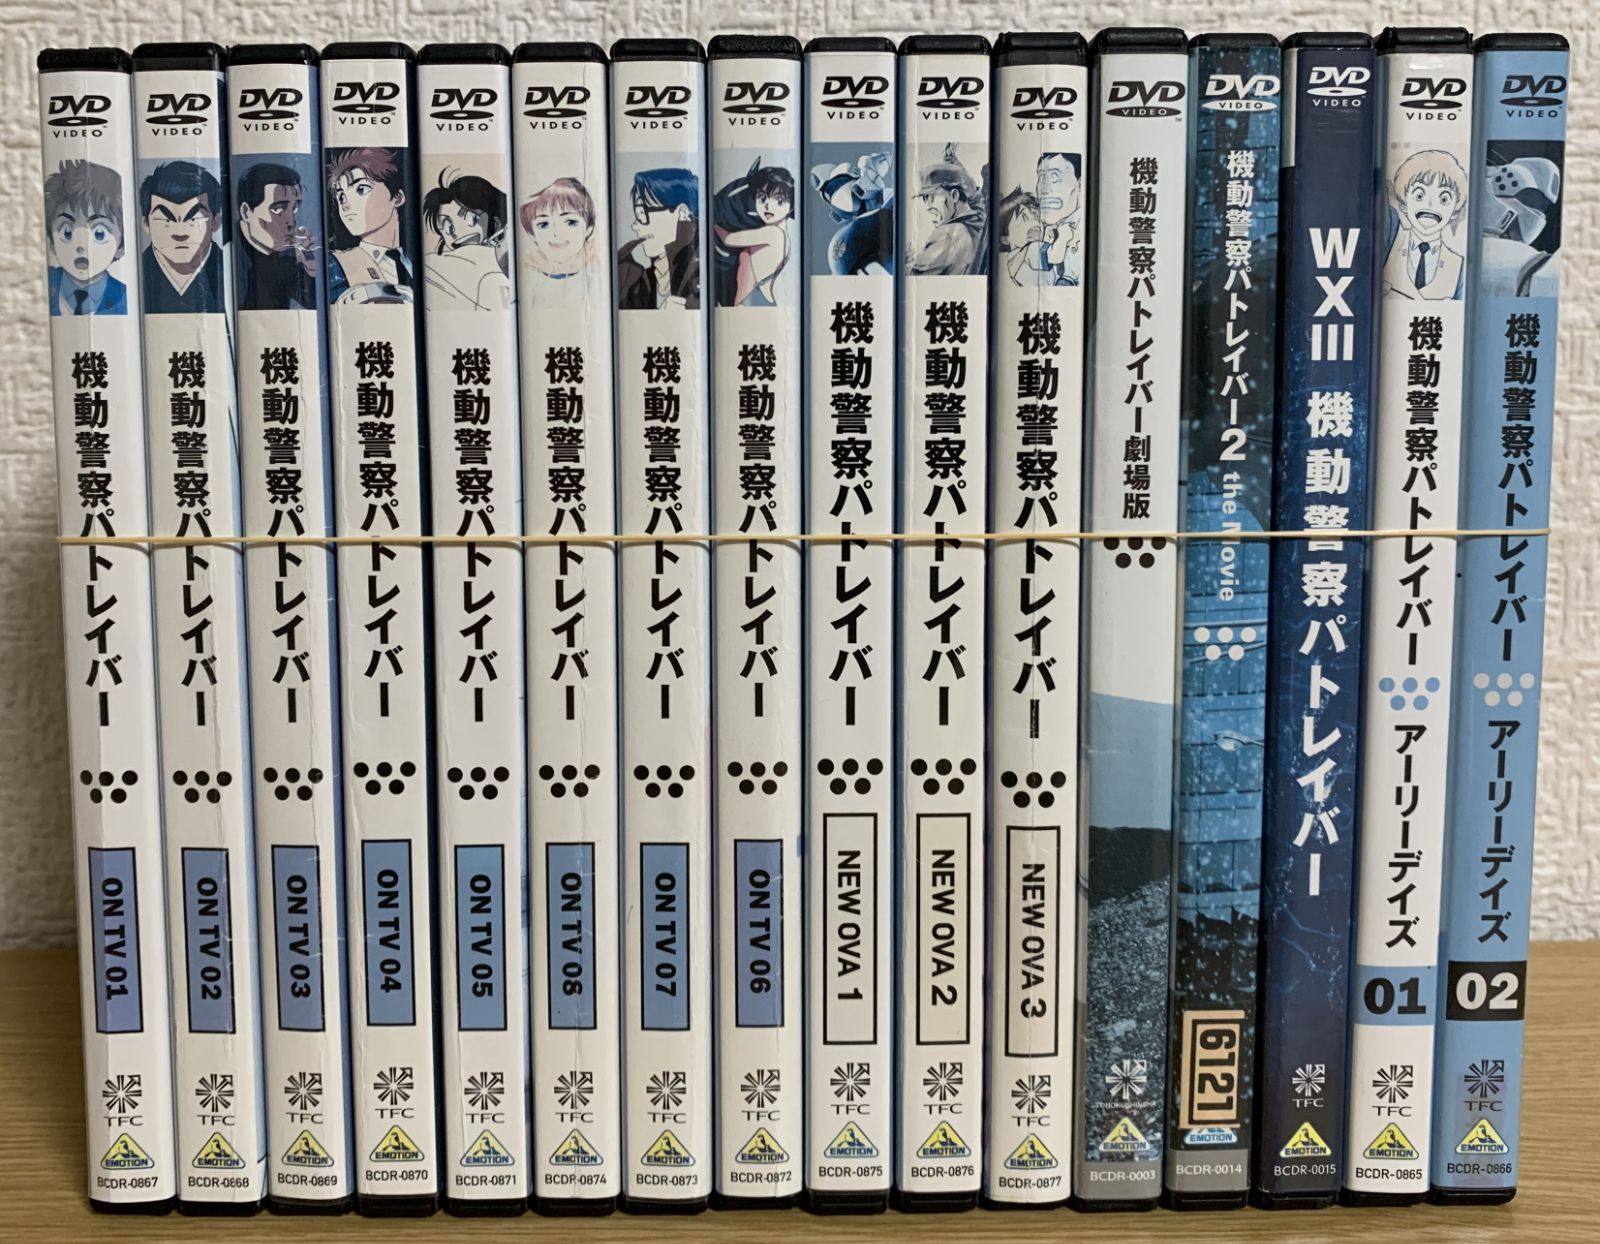 機動警察パトレイバー DVD 全8巻 + OVA + アーリーデイズ + 劇場版 